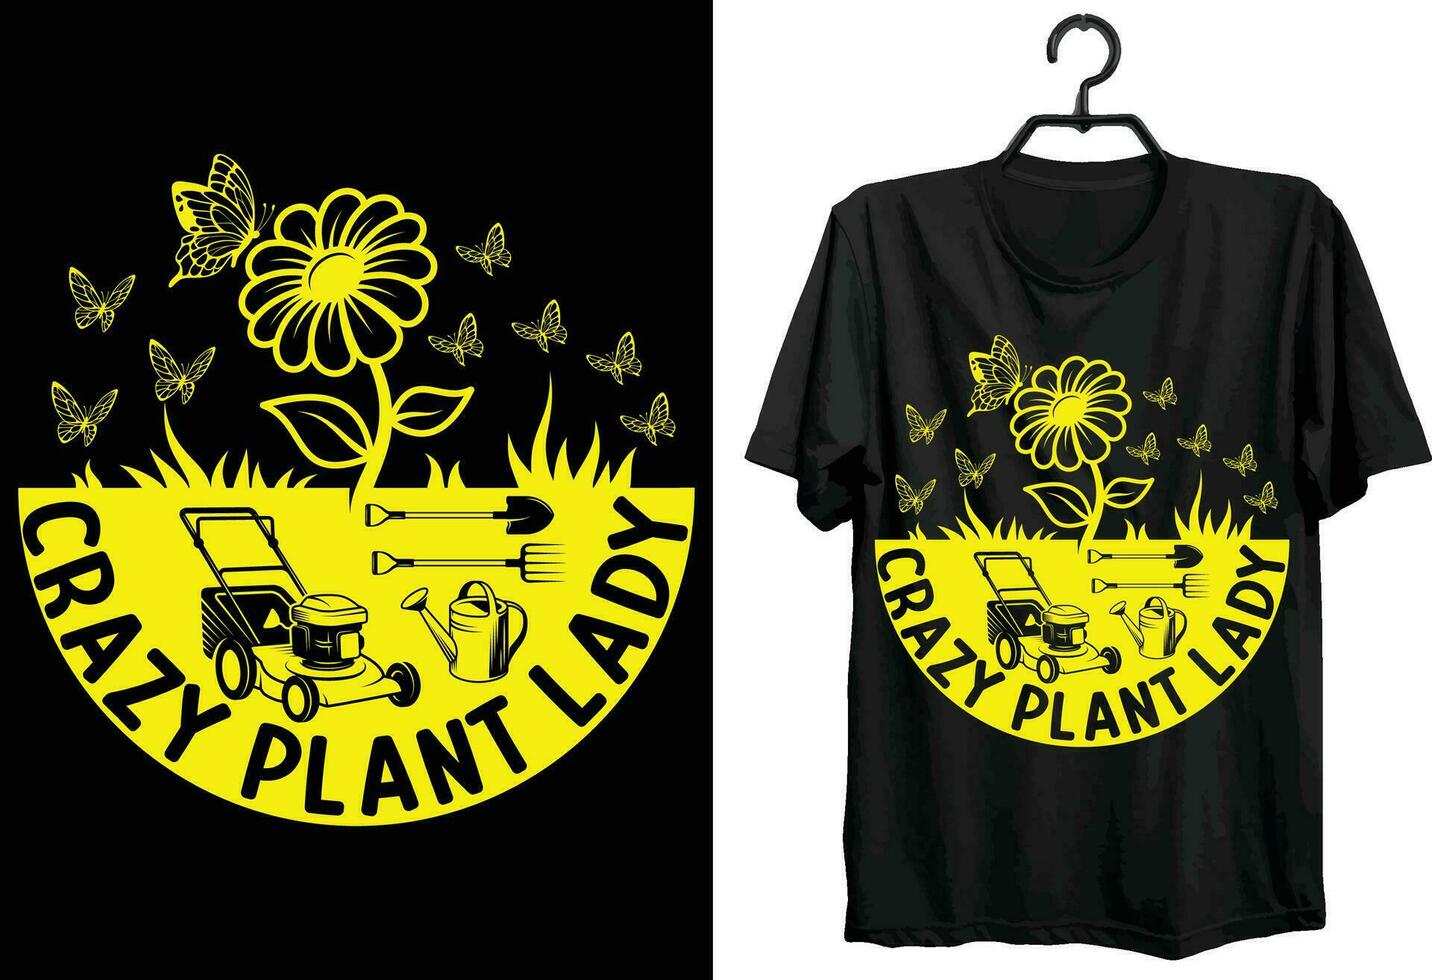 trädgårdsarbete t-shirt design. rolig gåva Artikel trädgårdsarbete t-shirt design för Allt trädgård älskare. världens bäst hobby trädgårdsarbete. vektor